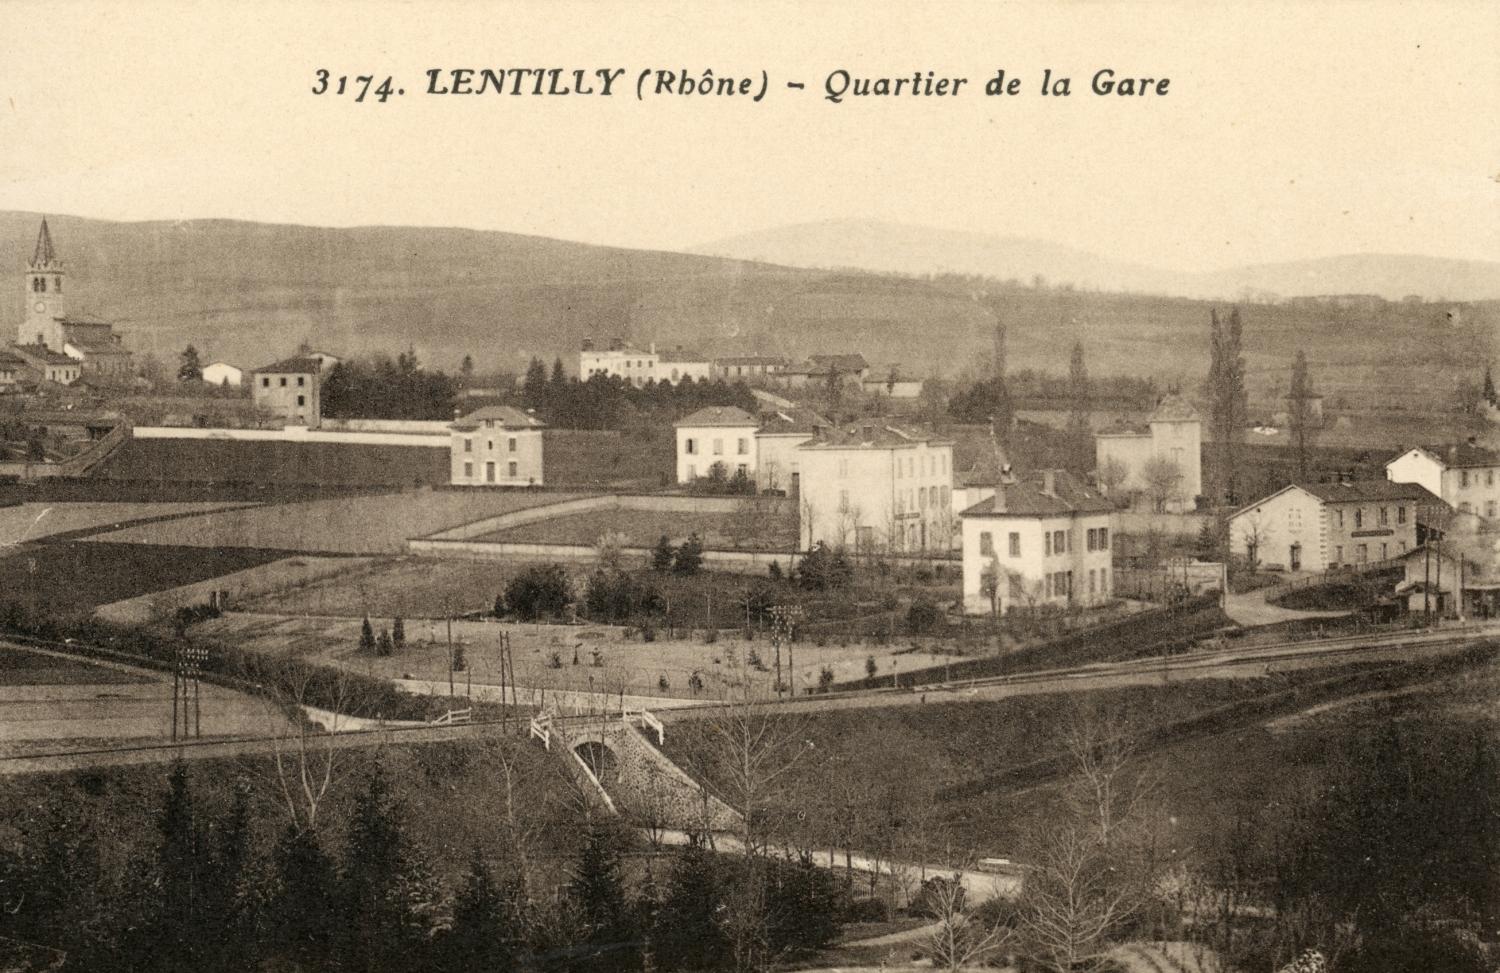 Lentilly (Rhône). - Quartier de la Gare